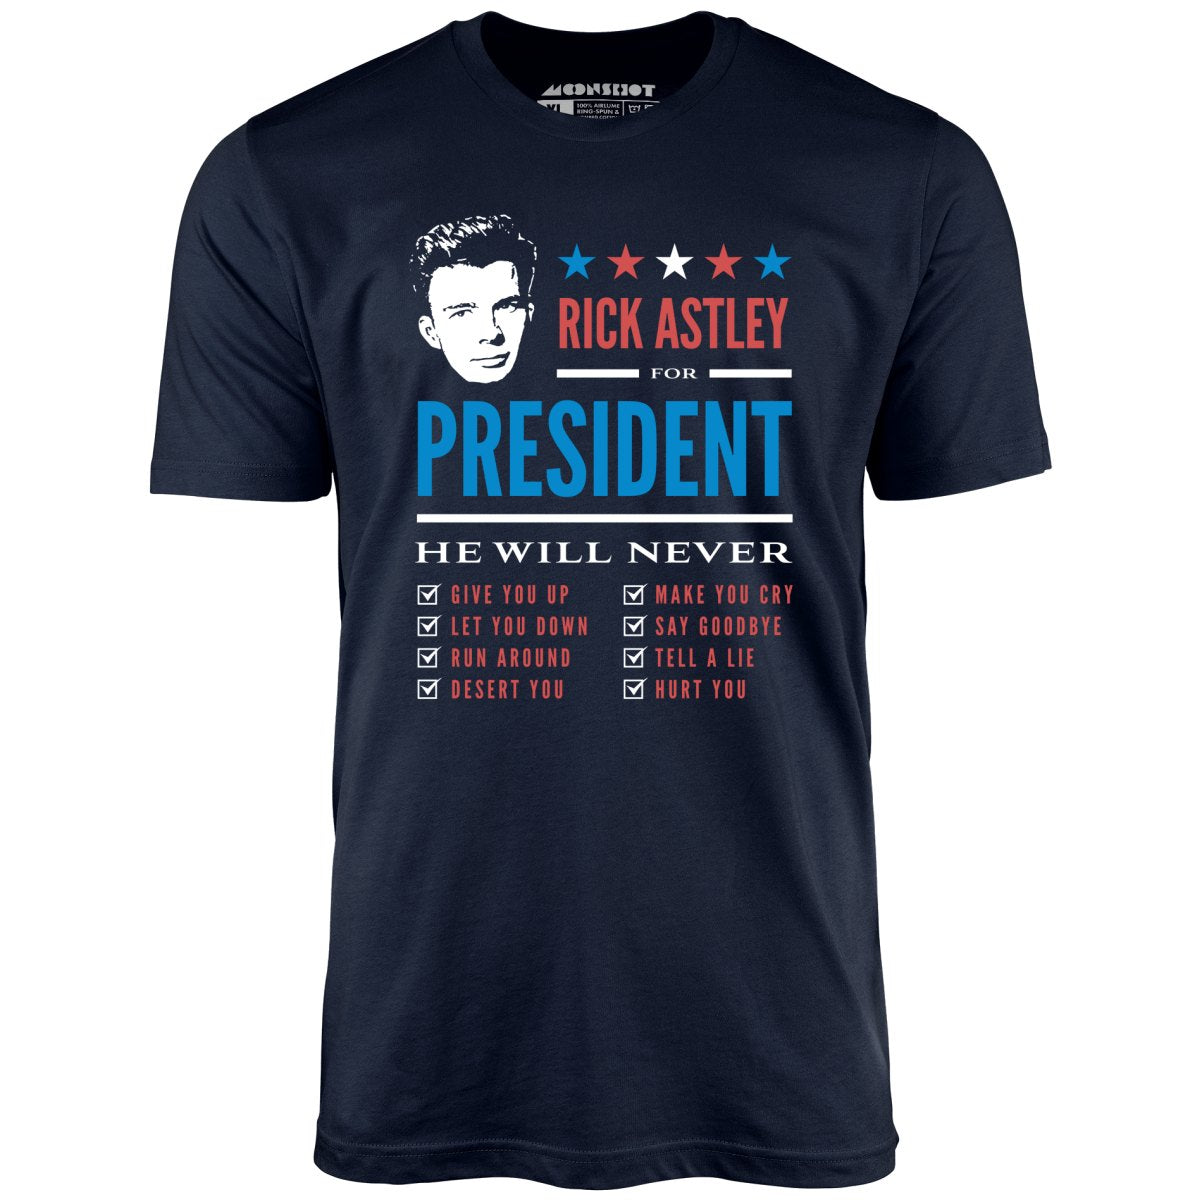 Rick Astley for President - Unisex T-Shirt